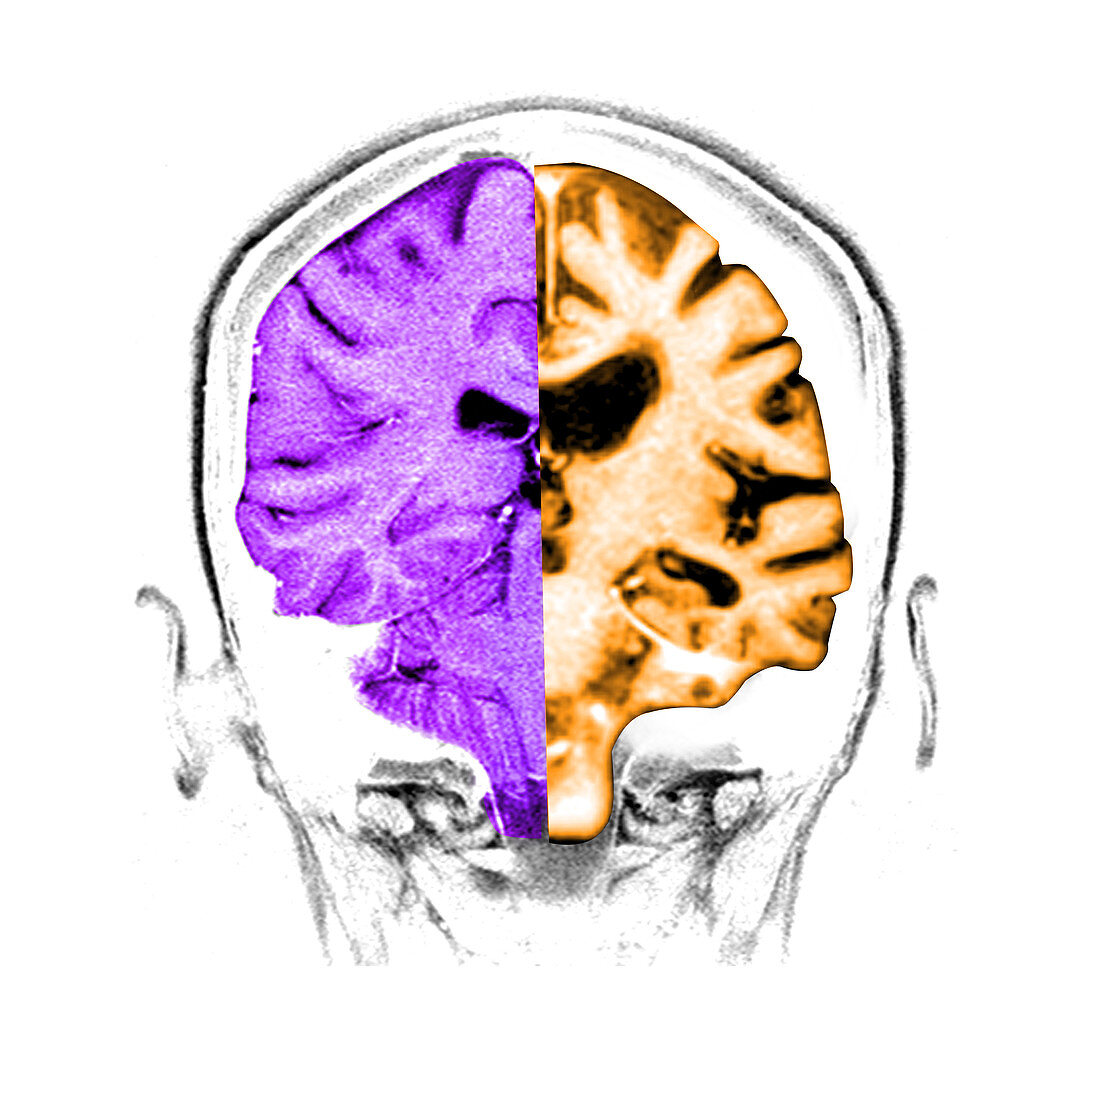 Normal Alzheimer's Brain Comparison